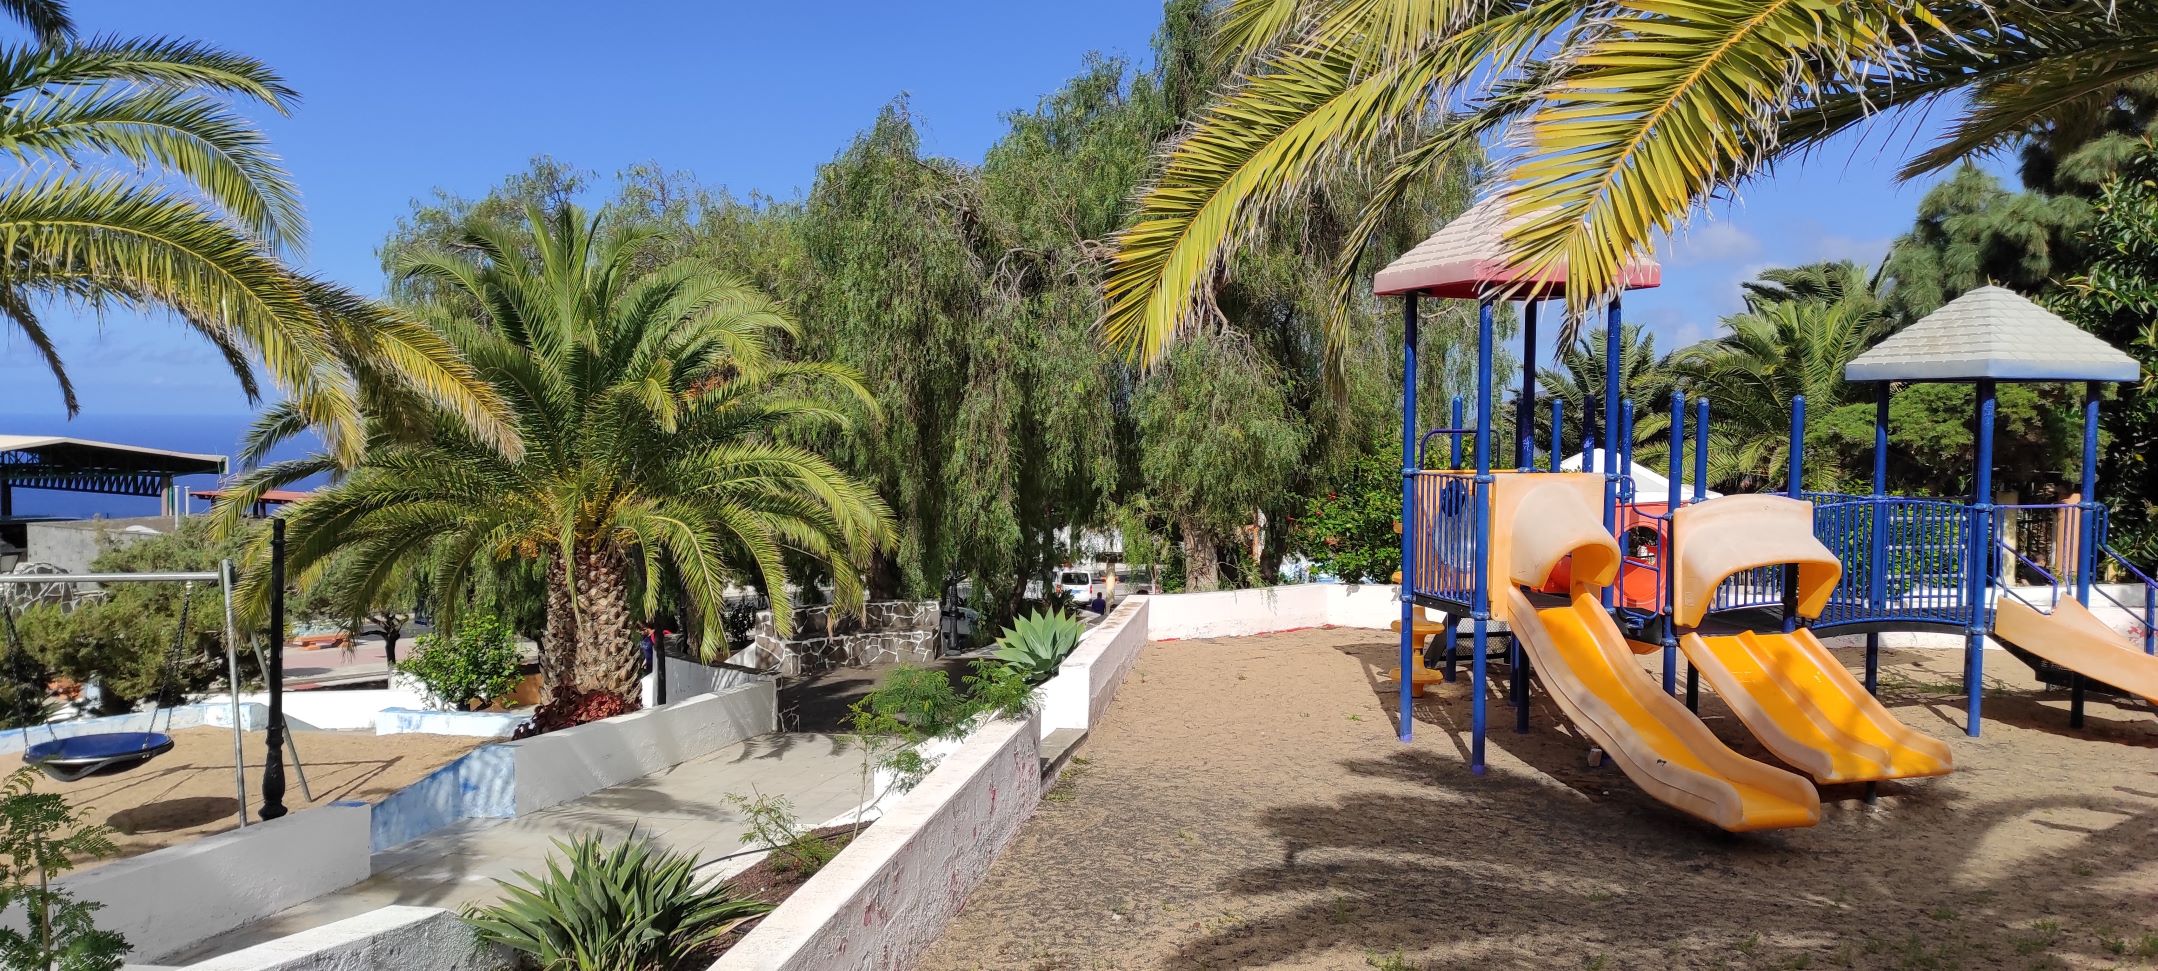 El Ayuntamiento de La Frontera licita la obra de acondicionamiento del parque infantil situado en las inmediaciones del consistorio